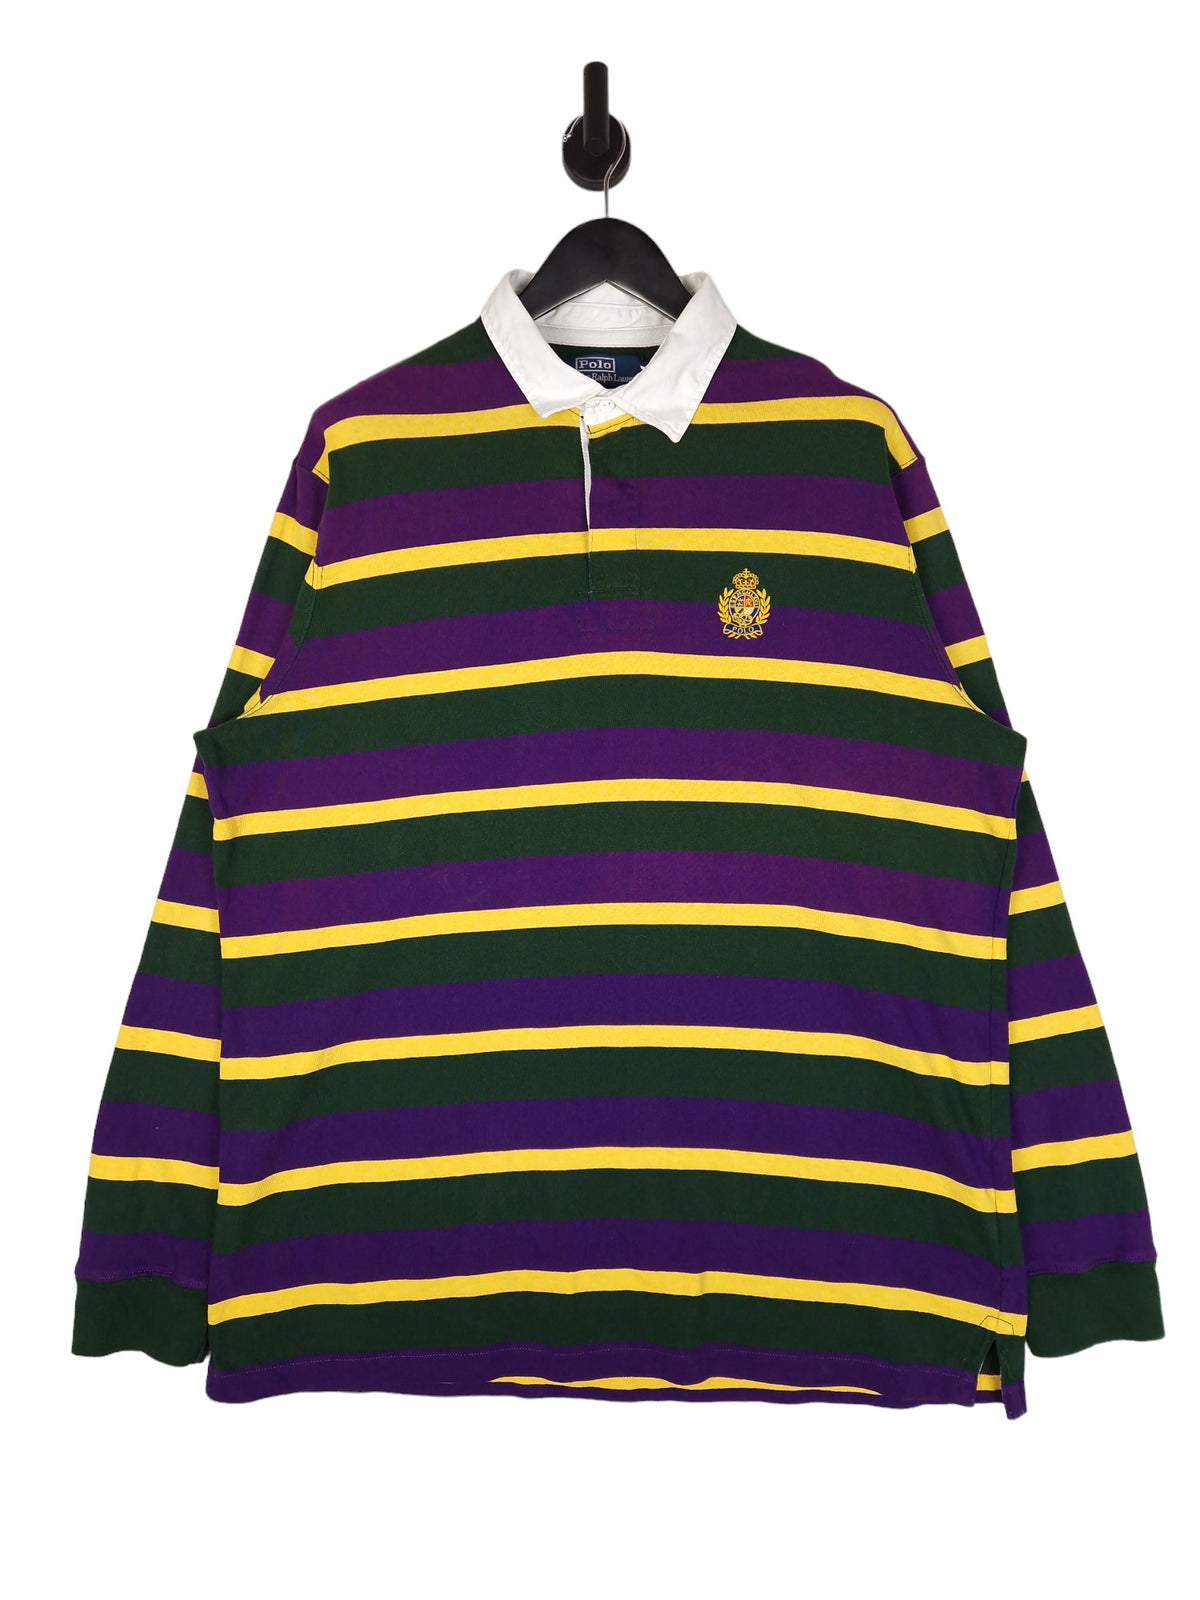 Polo Ralph Lauren Rugby Shirt - Size XL